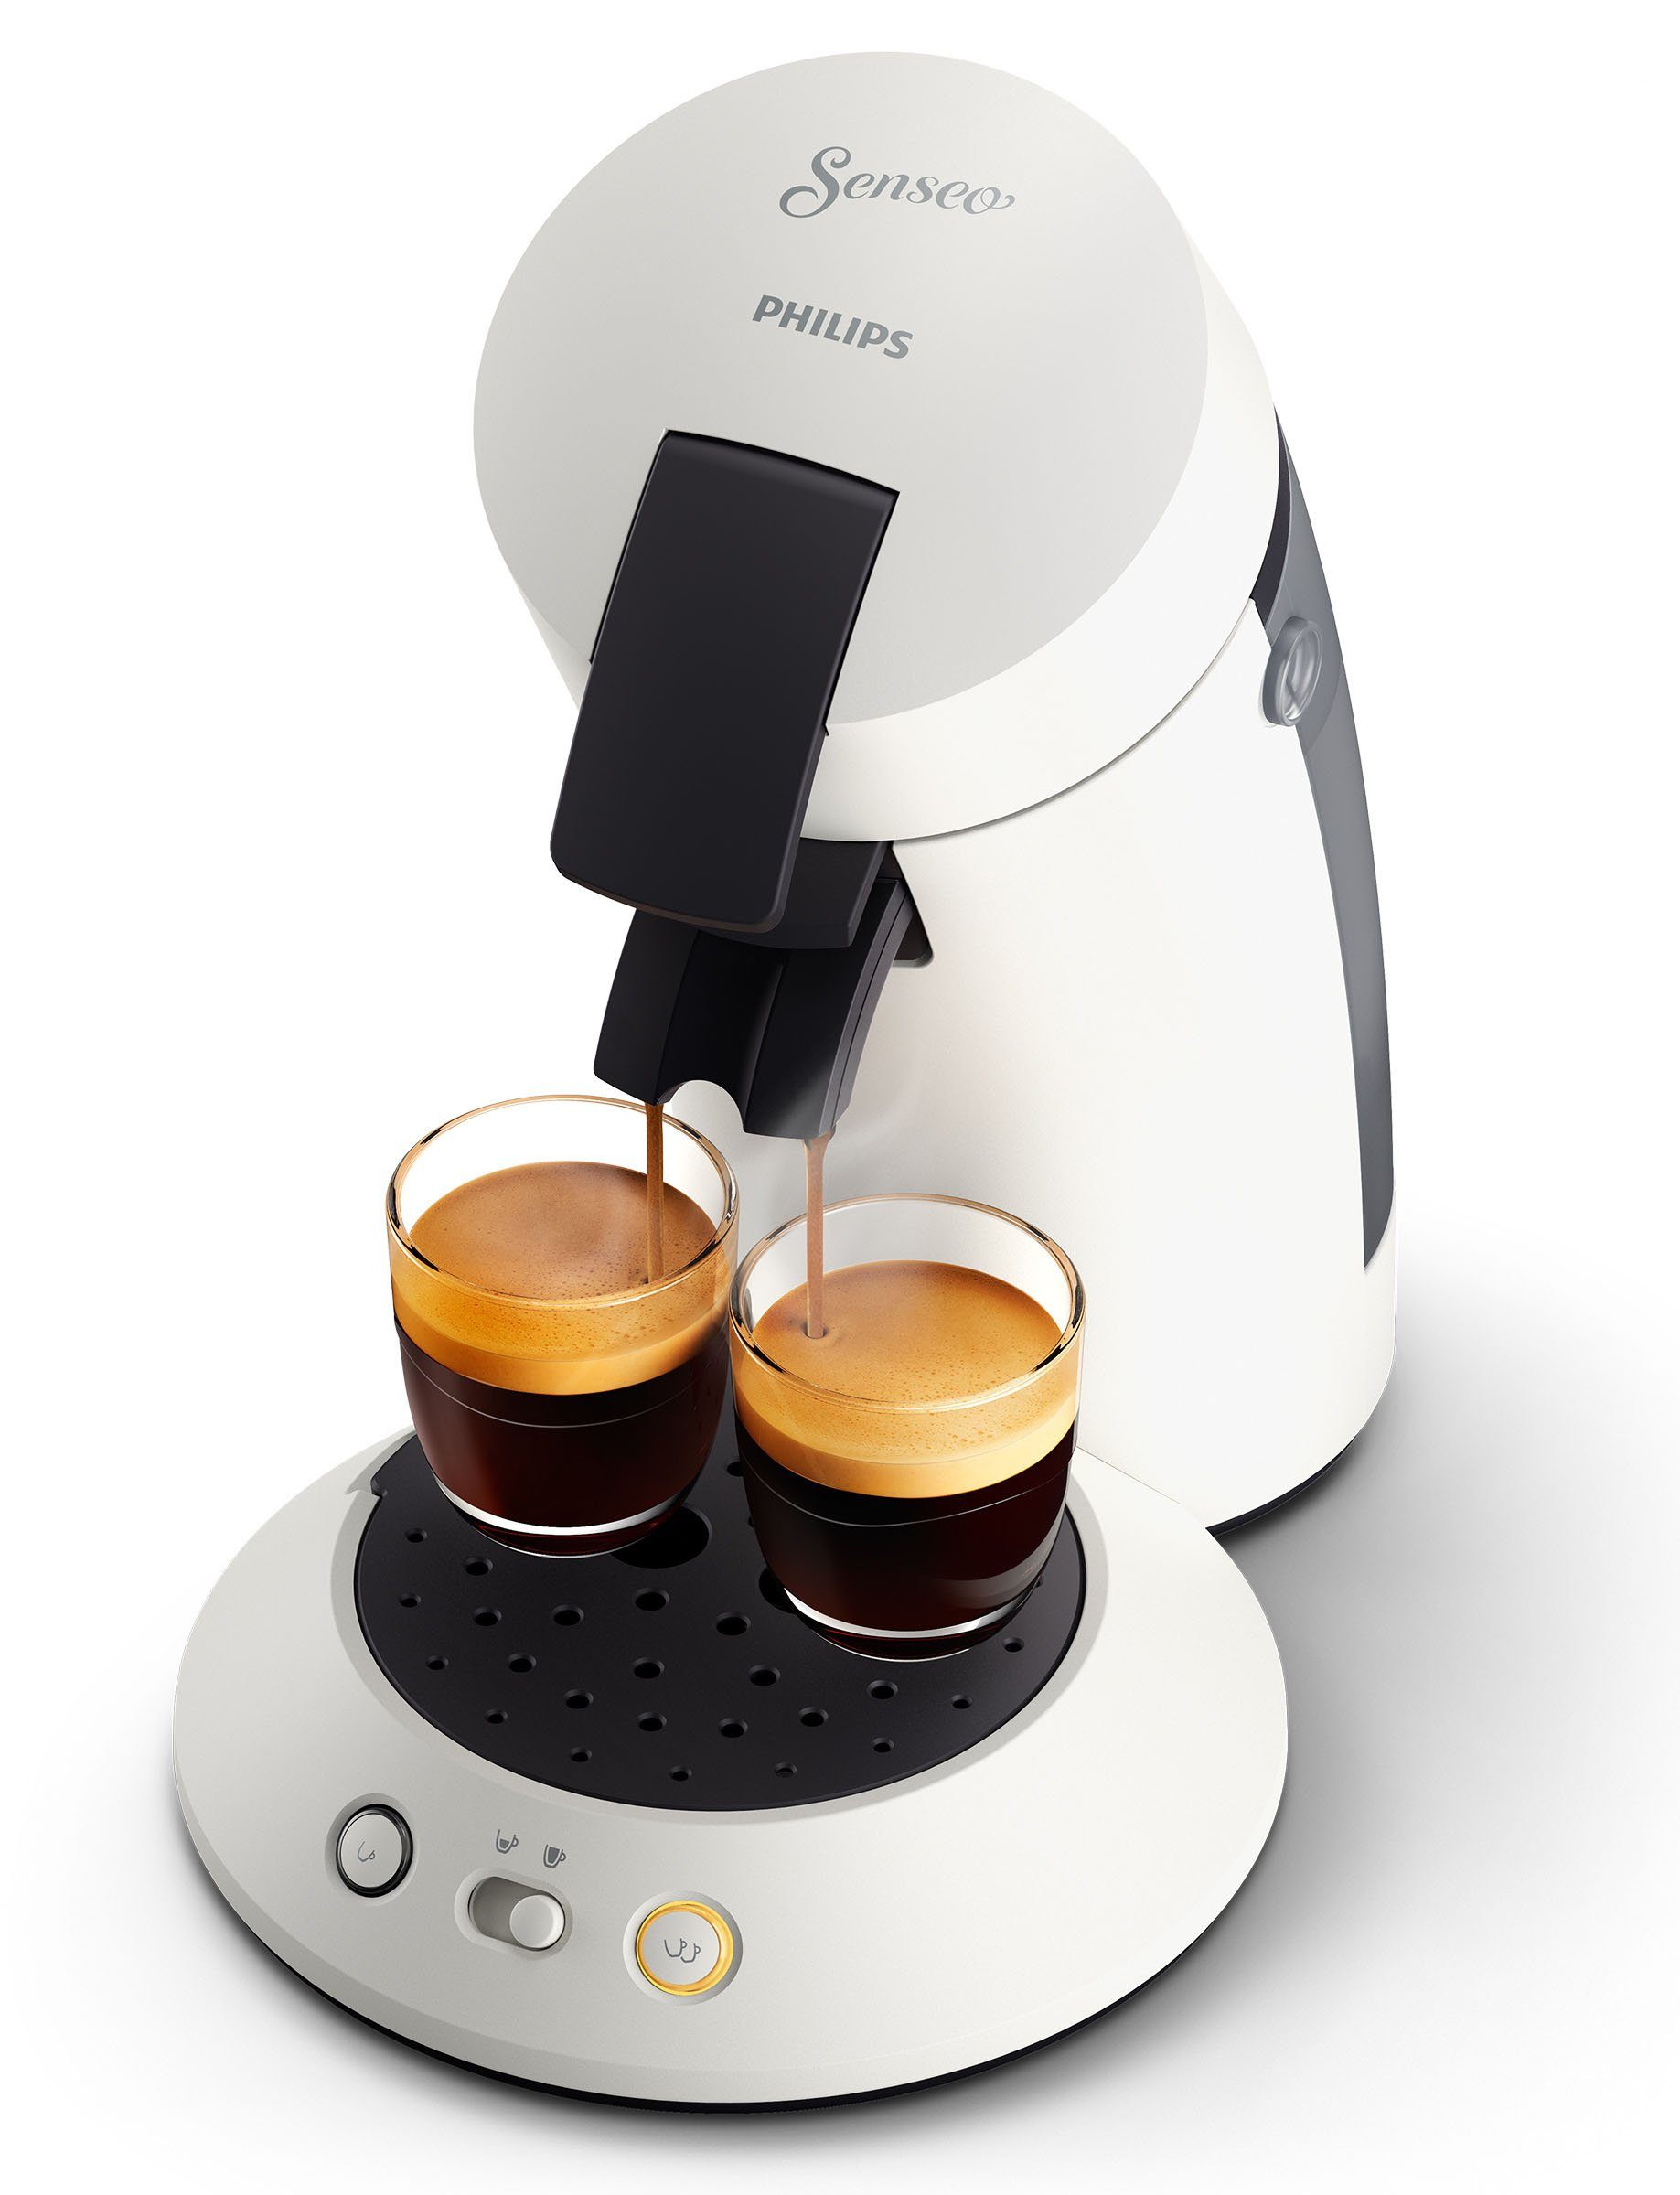 Philips Senseo Kaffeepadmaschine Original Plus CSA210/10, aus 80% recyceltem  Plastik, +3 Kaffeespezialitäten, Memo-Funktion, Gratis-Zugaben (Wert € 5,-UVP) | Kaffeepadmaschinen